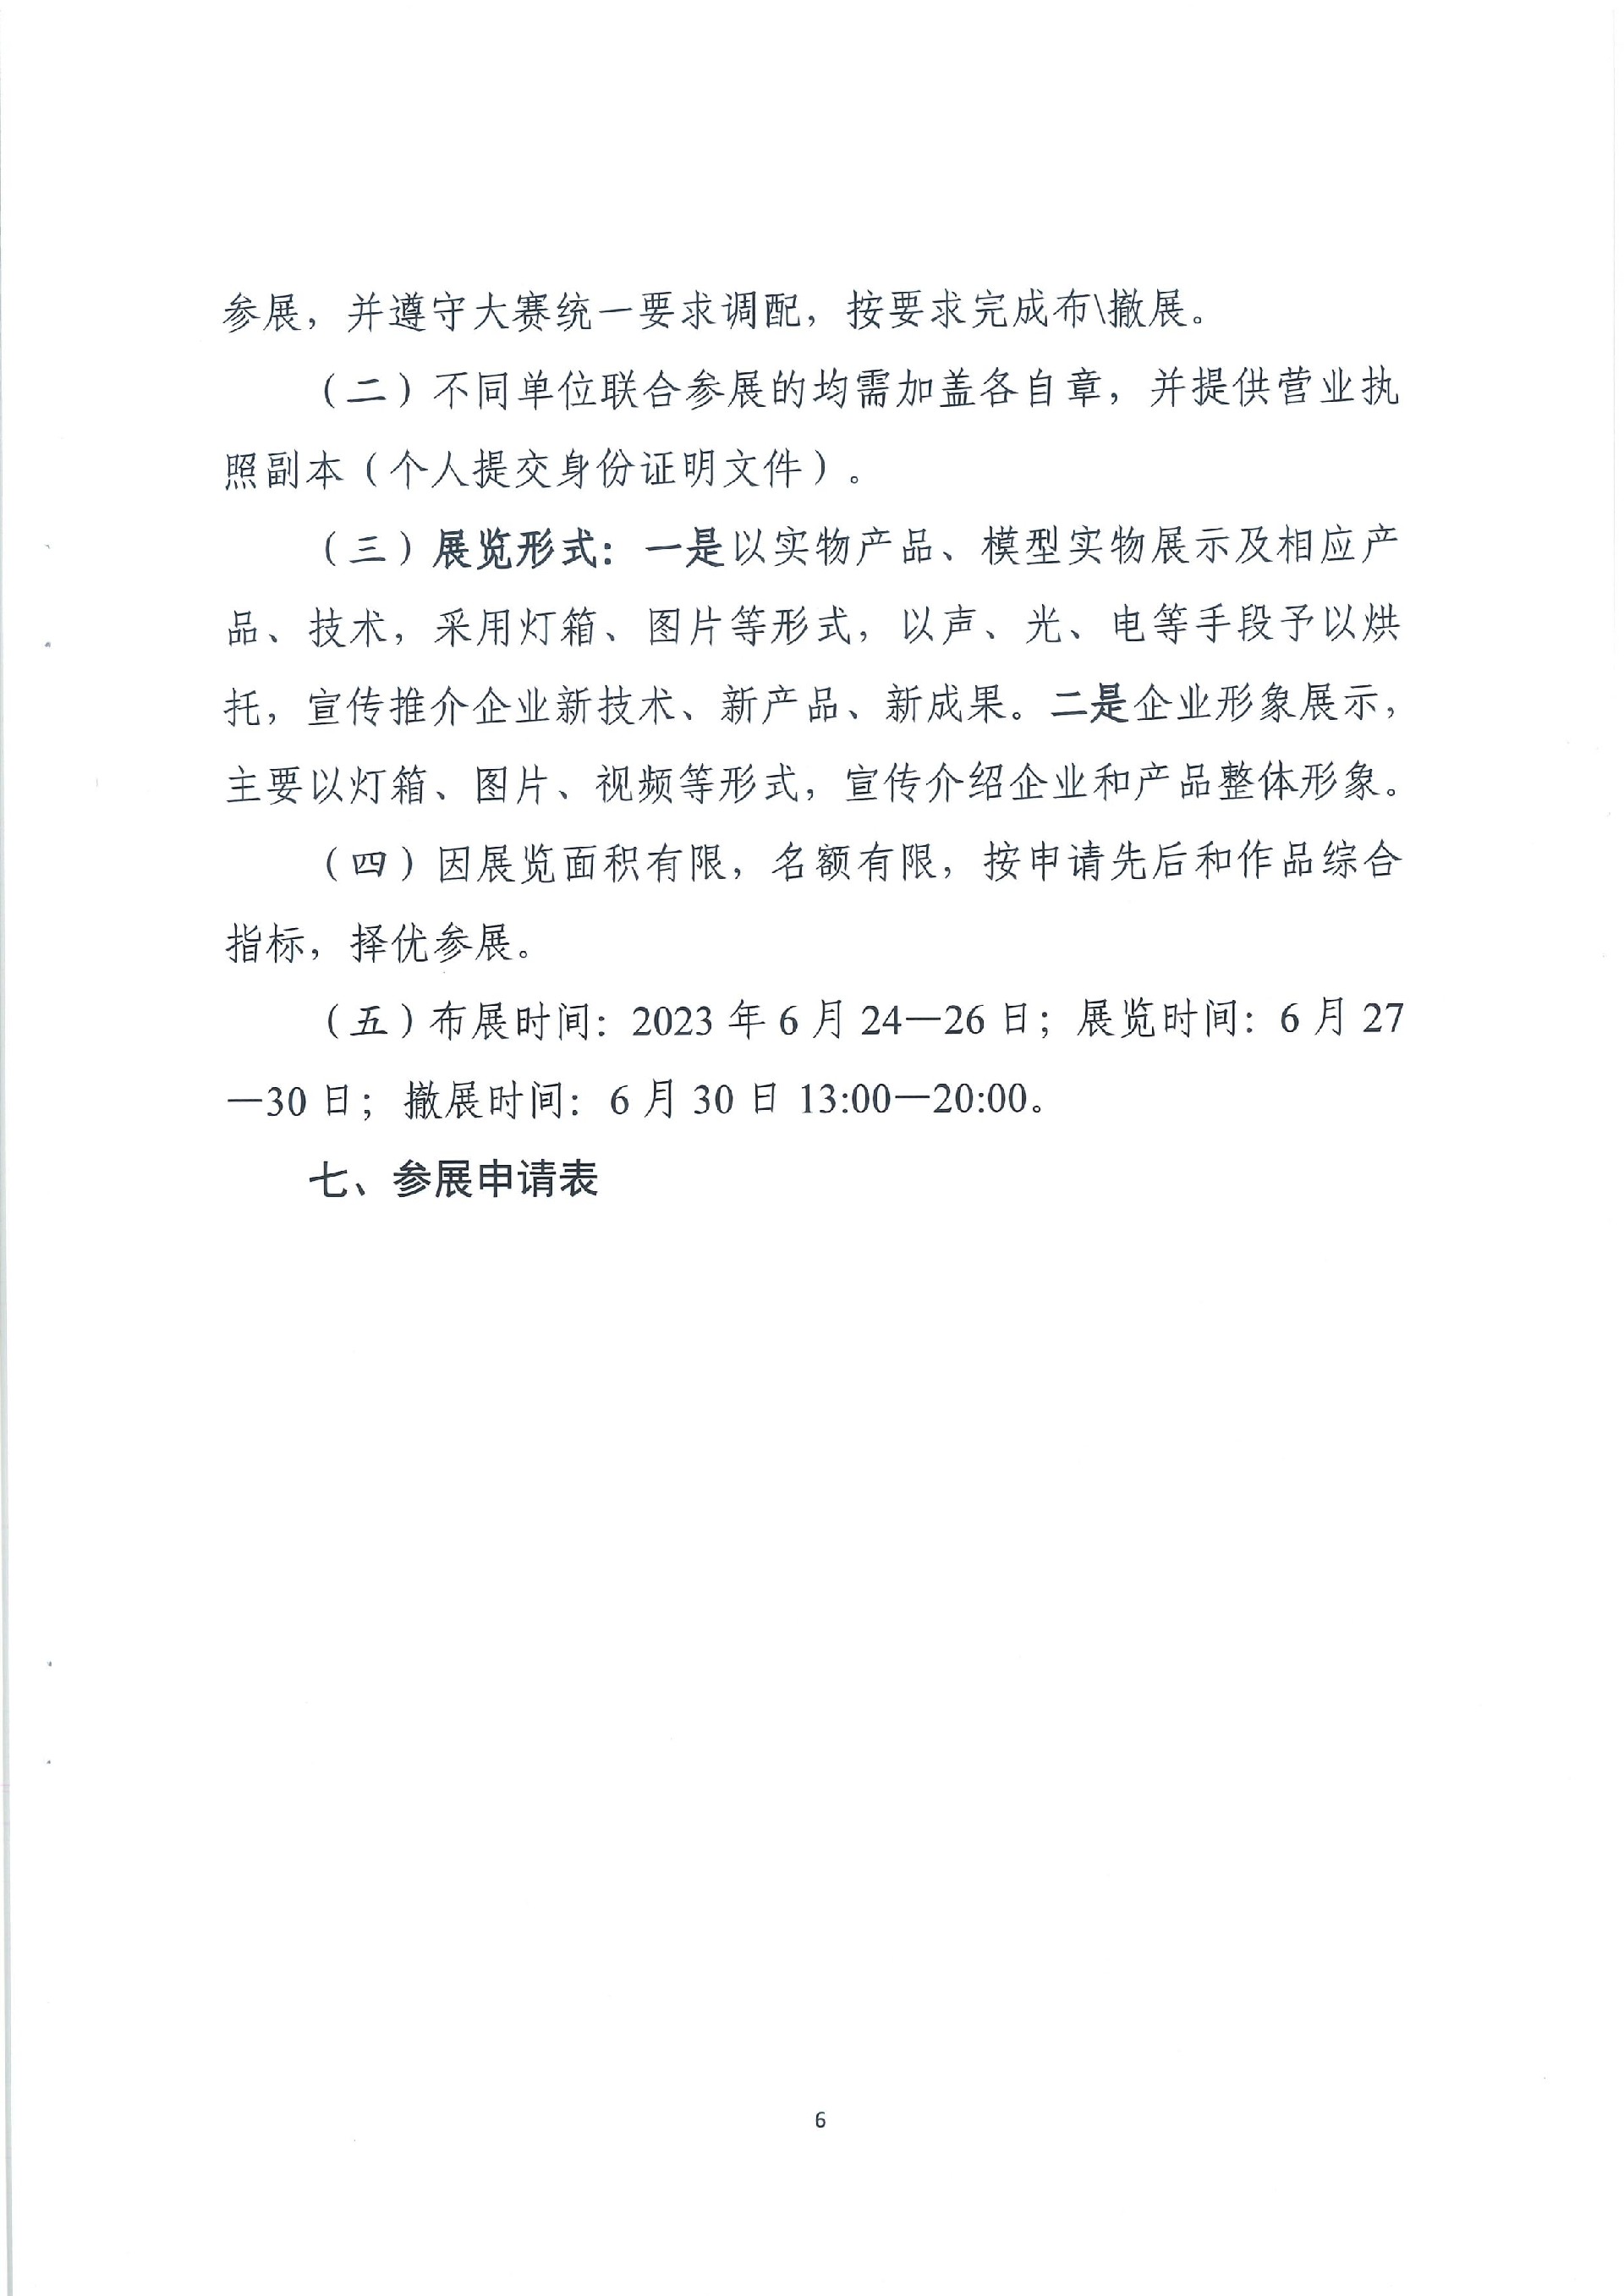 粤工信规划政策函24号：未来产业展通知_06.jpg